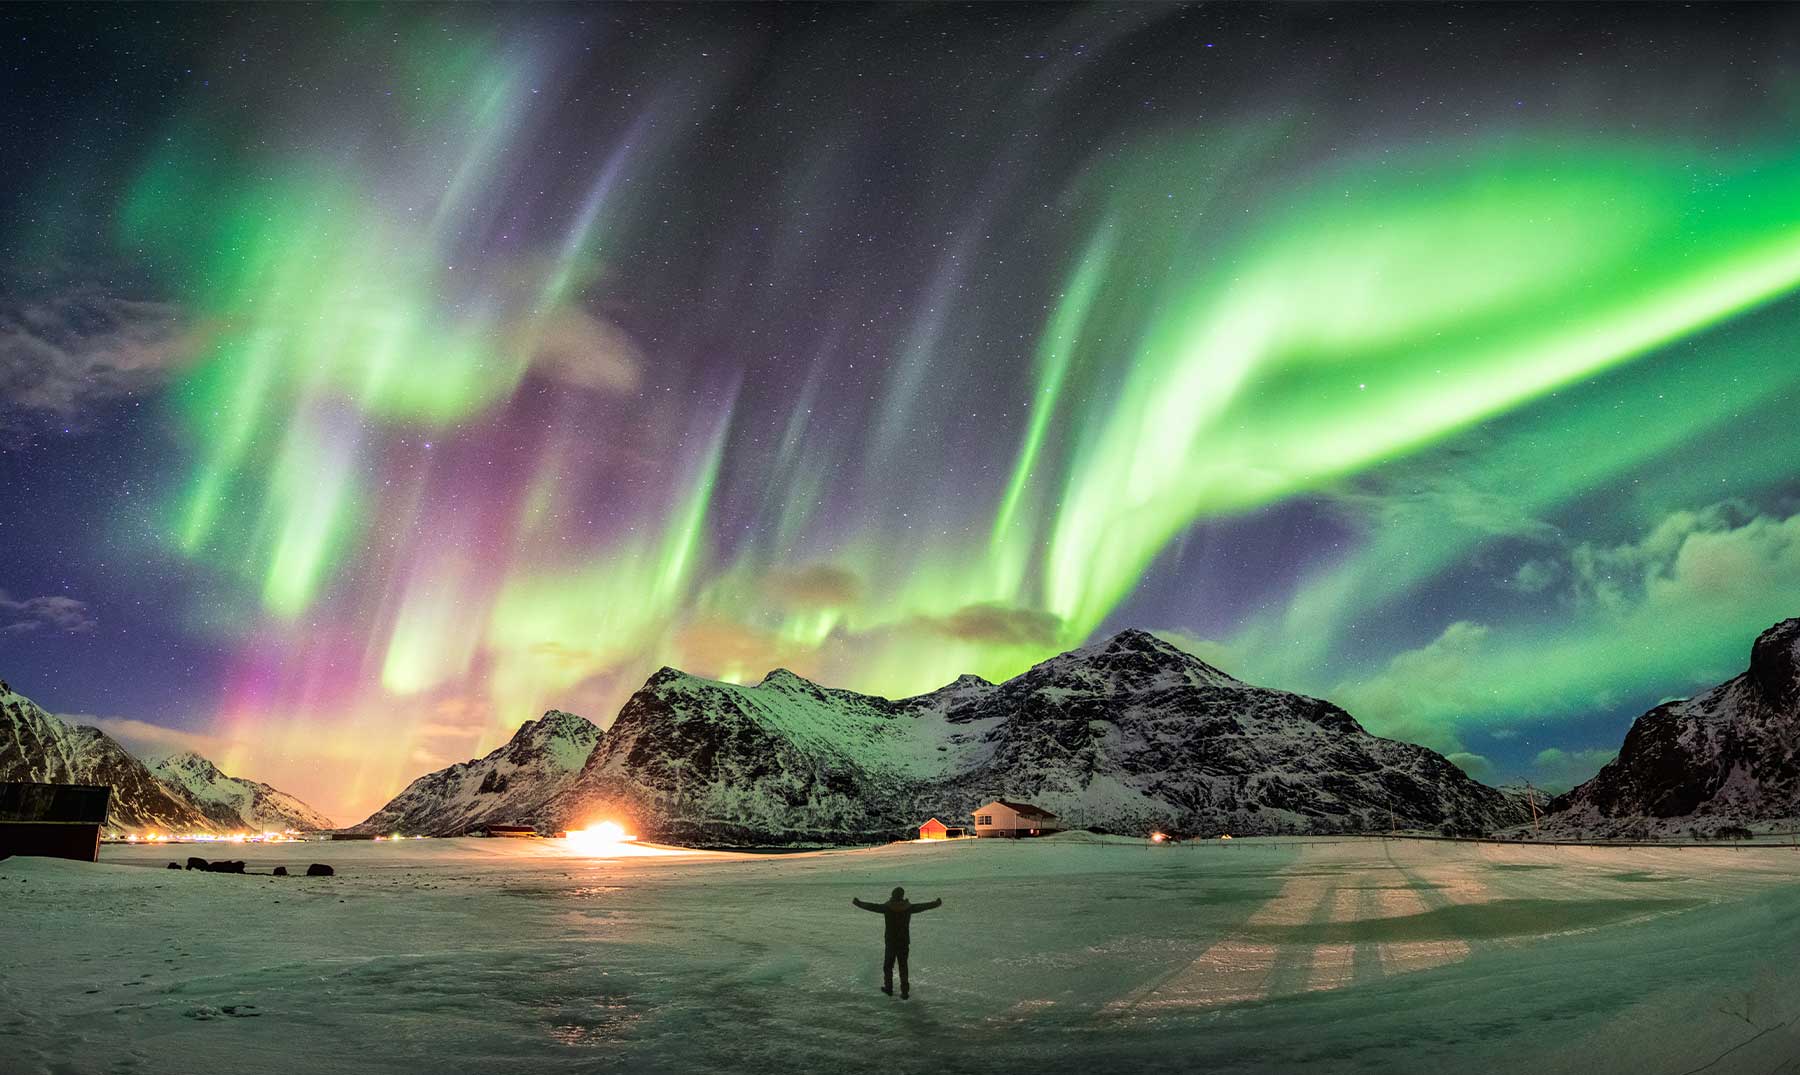 La noche polar está acompañada de cielo estrellado y auroras boreales.